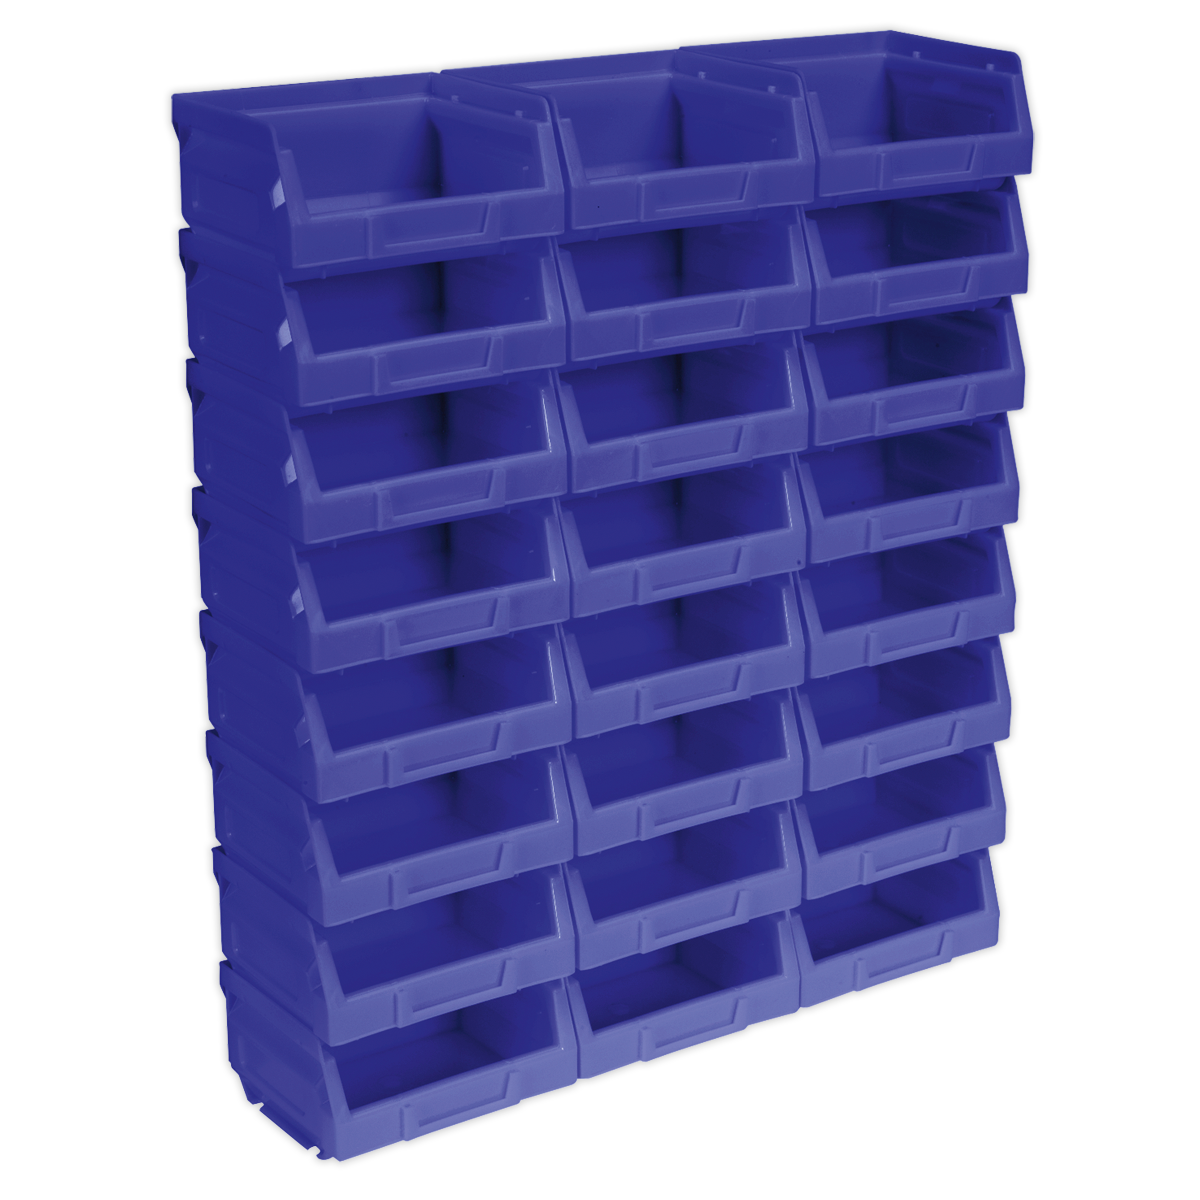 Plastic Storage Bin 105 x 85 x 55mm - Blue Pack of 24 - TPS124B - Farming Parts